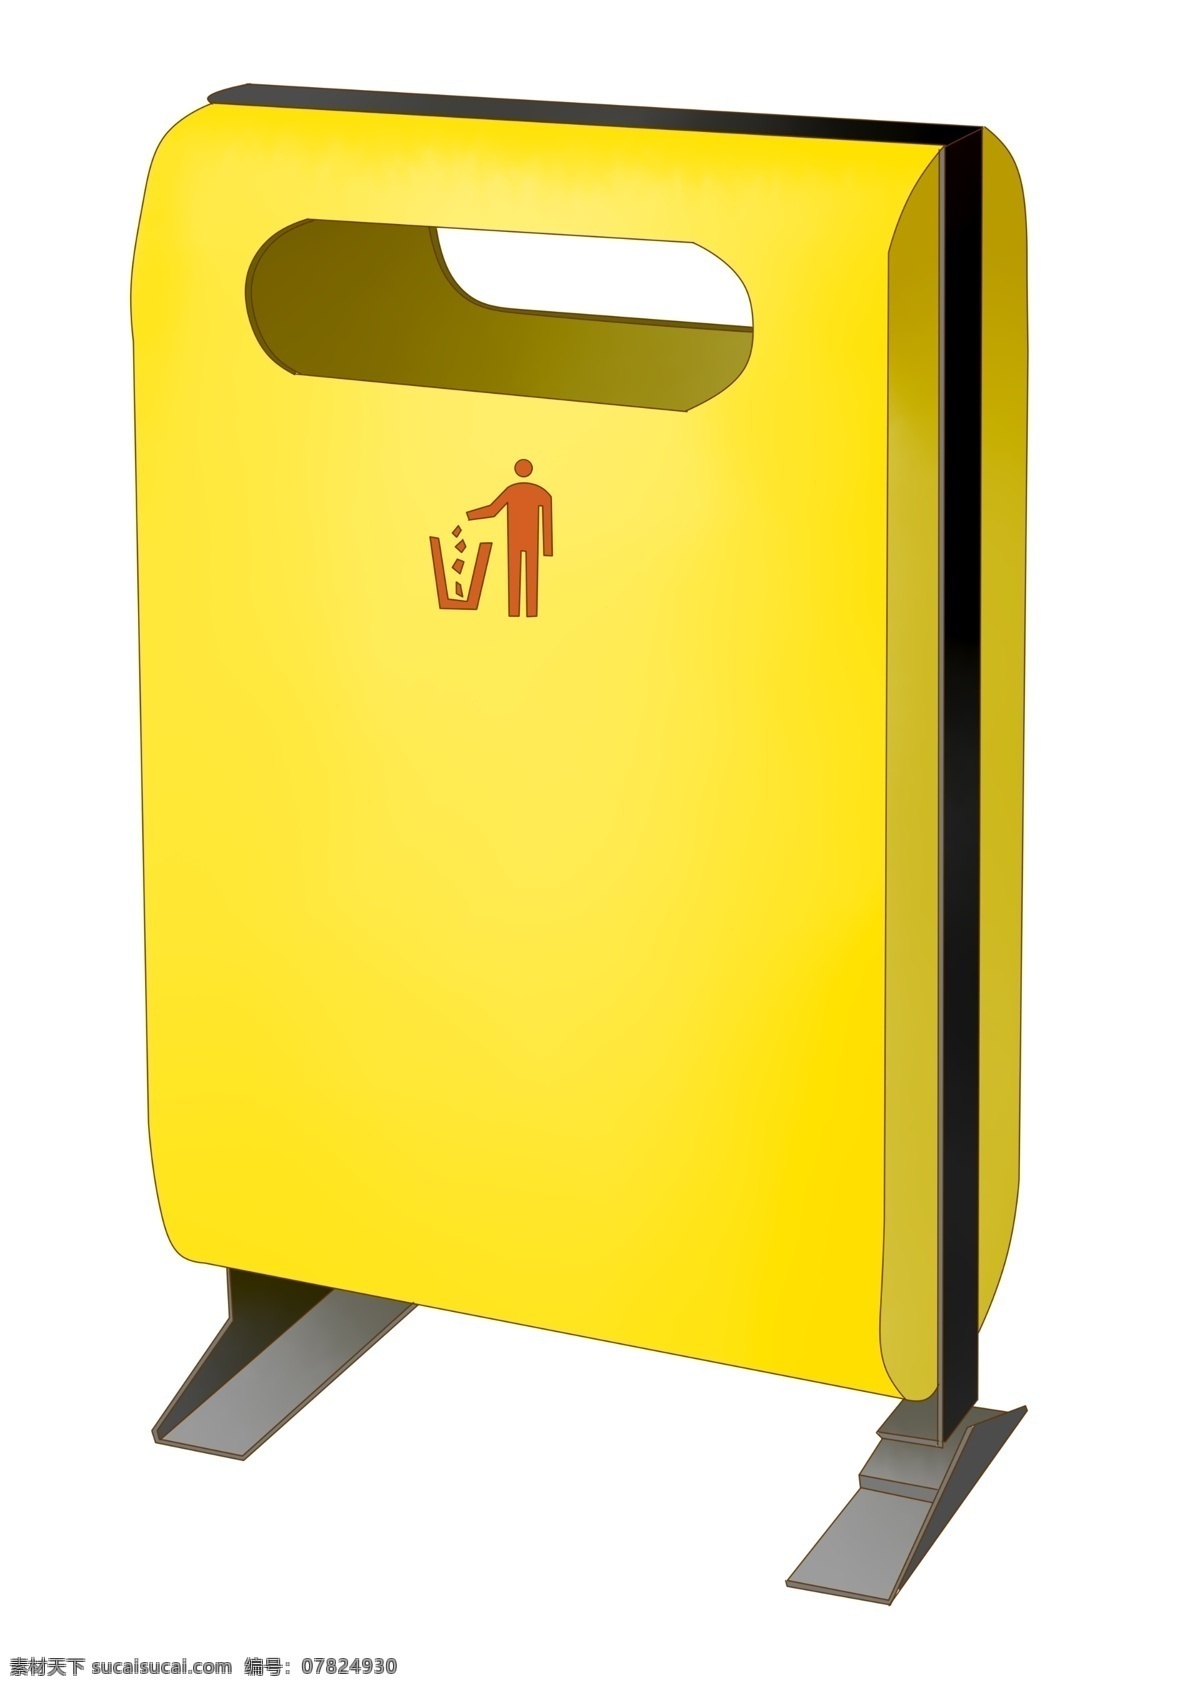 创意 垃圾桶 清洁 卫生 卫生日 创意垃圾桶 垃圾桶垃圾箱 黄色垃圾箱 打扫卫生 清洁卫生 插画